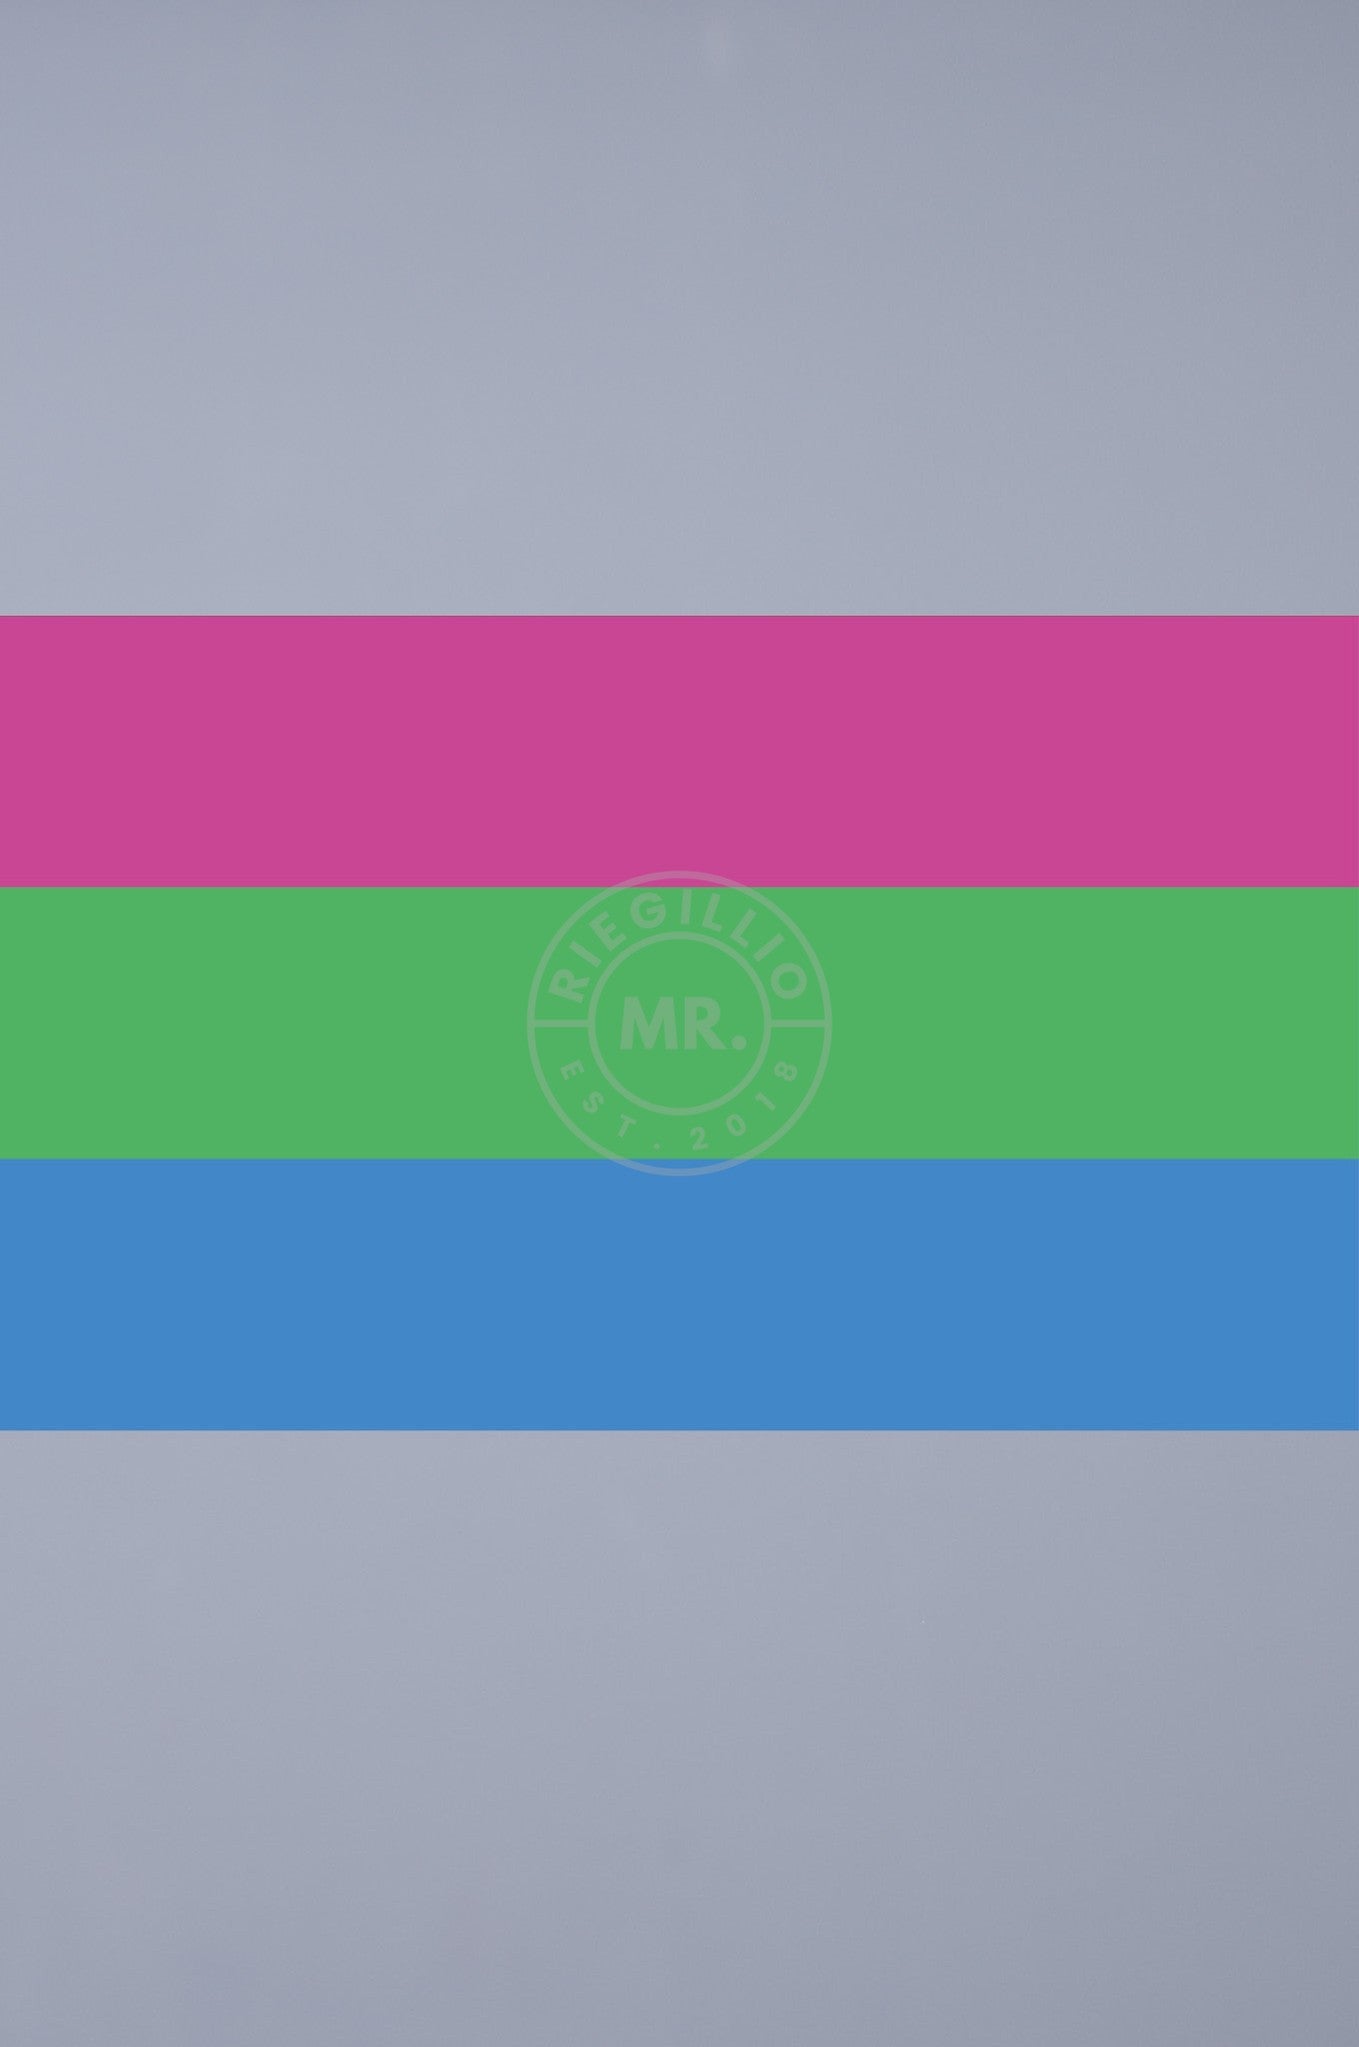 Pride Flag - Polysexual - 90 x 150 cm at MR. Riegillio